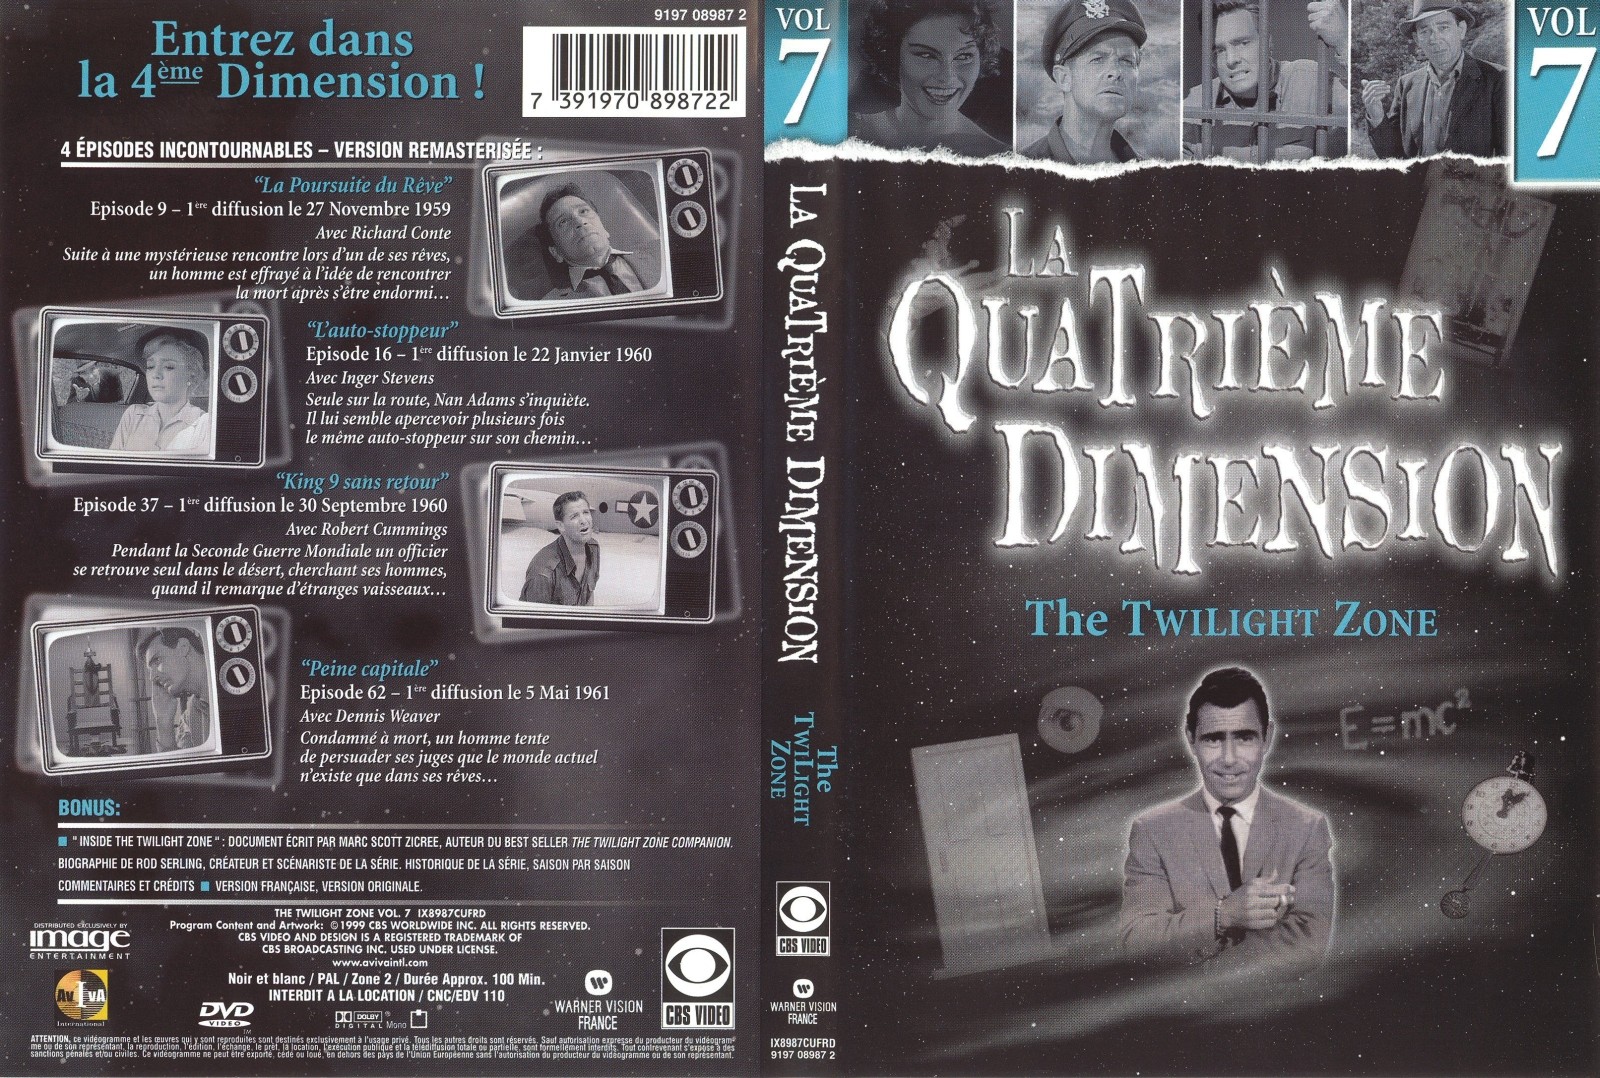 Jaquette DVD La quatrieme dimension vol 7